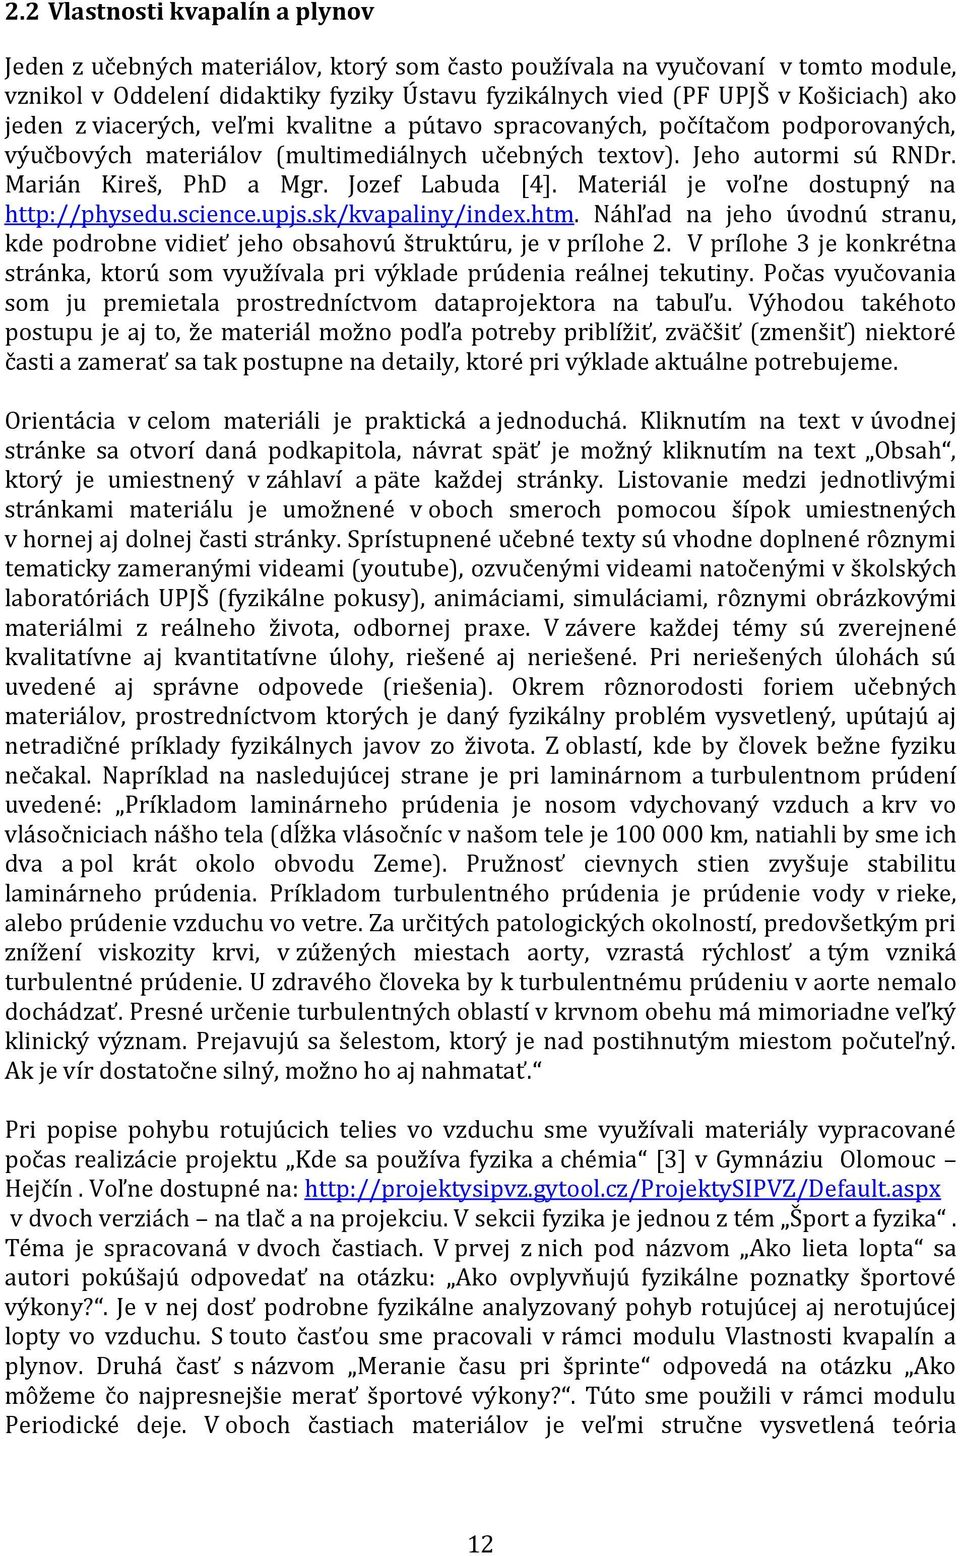 Jozef Labuda [4]. Materiál je voľne dostupný na http://physedu.science.upjs.sk/kvapaliny/index.htm. Náhľad na jeho úvodnú stranu, kde podrobne vidieť jeho obsahovú štruktúru, je v prílohe 2.